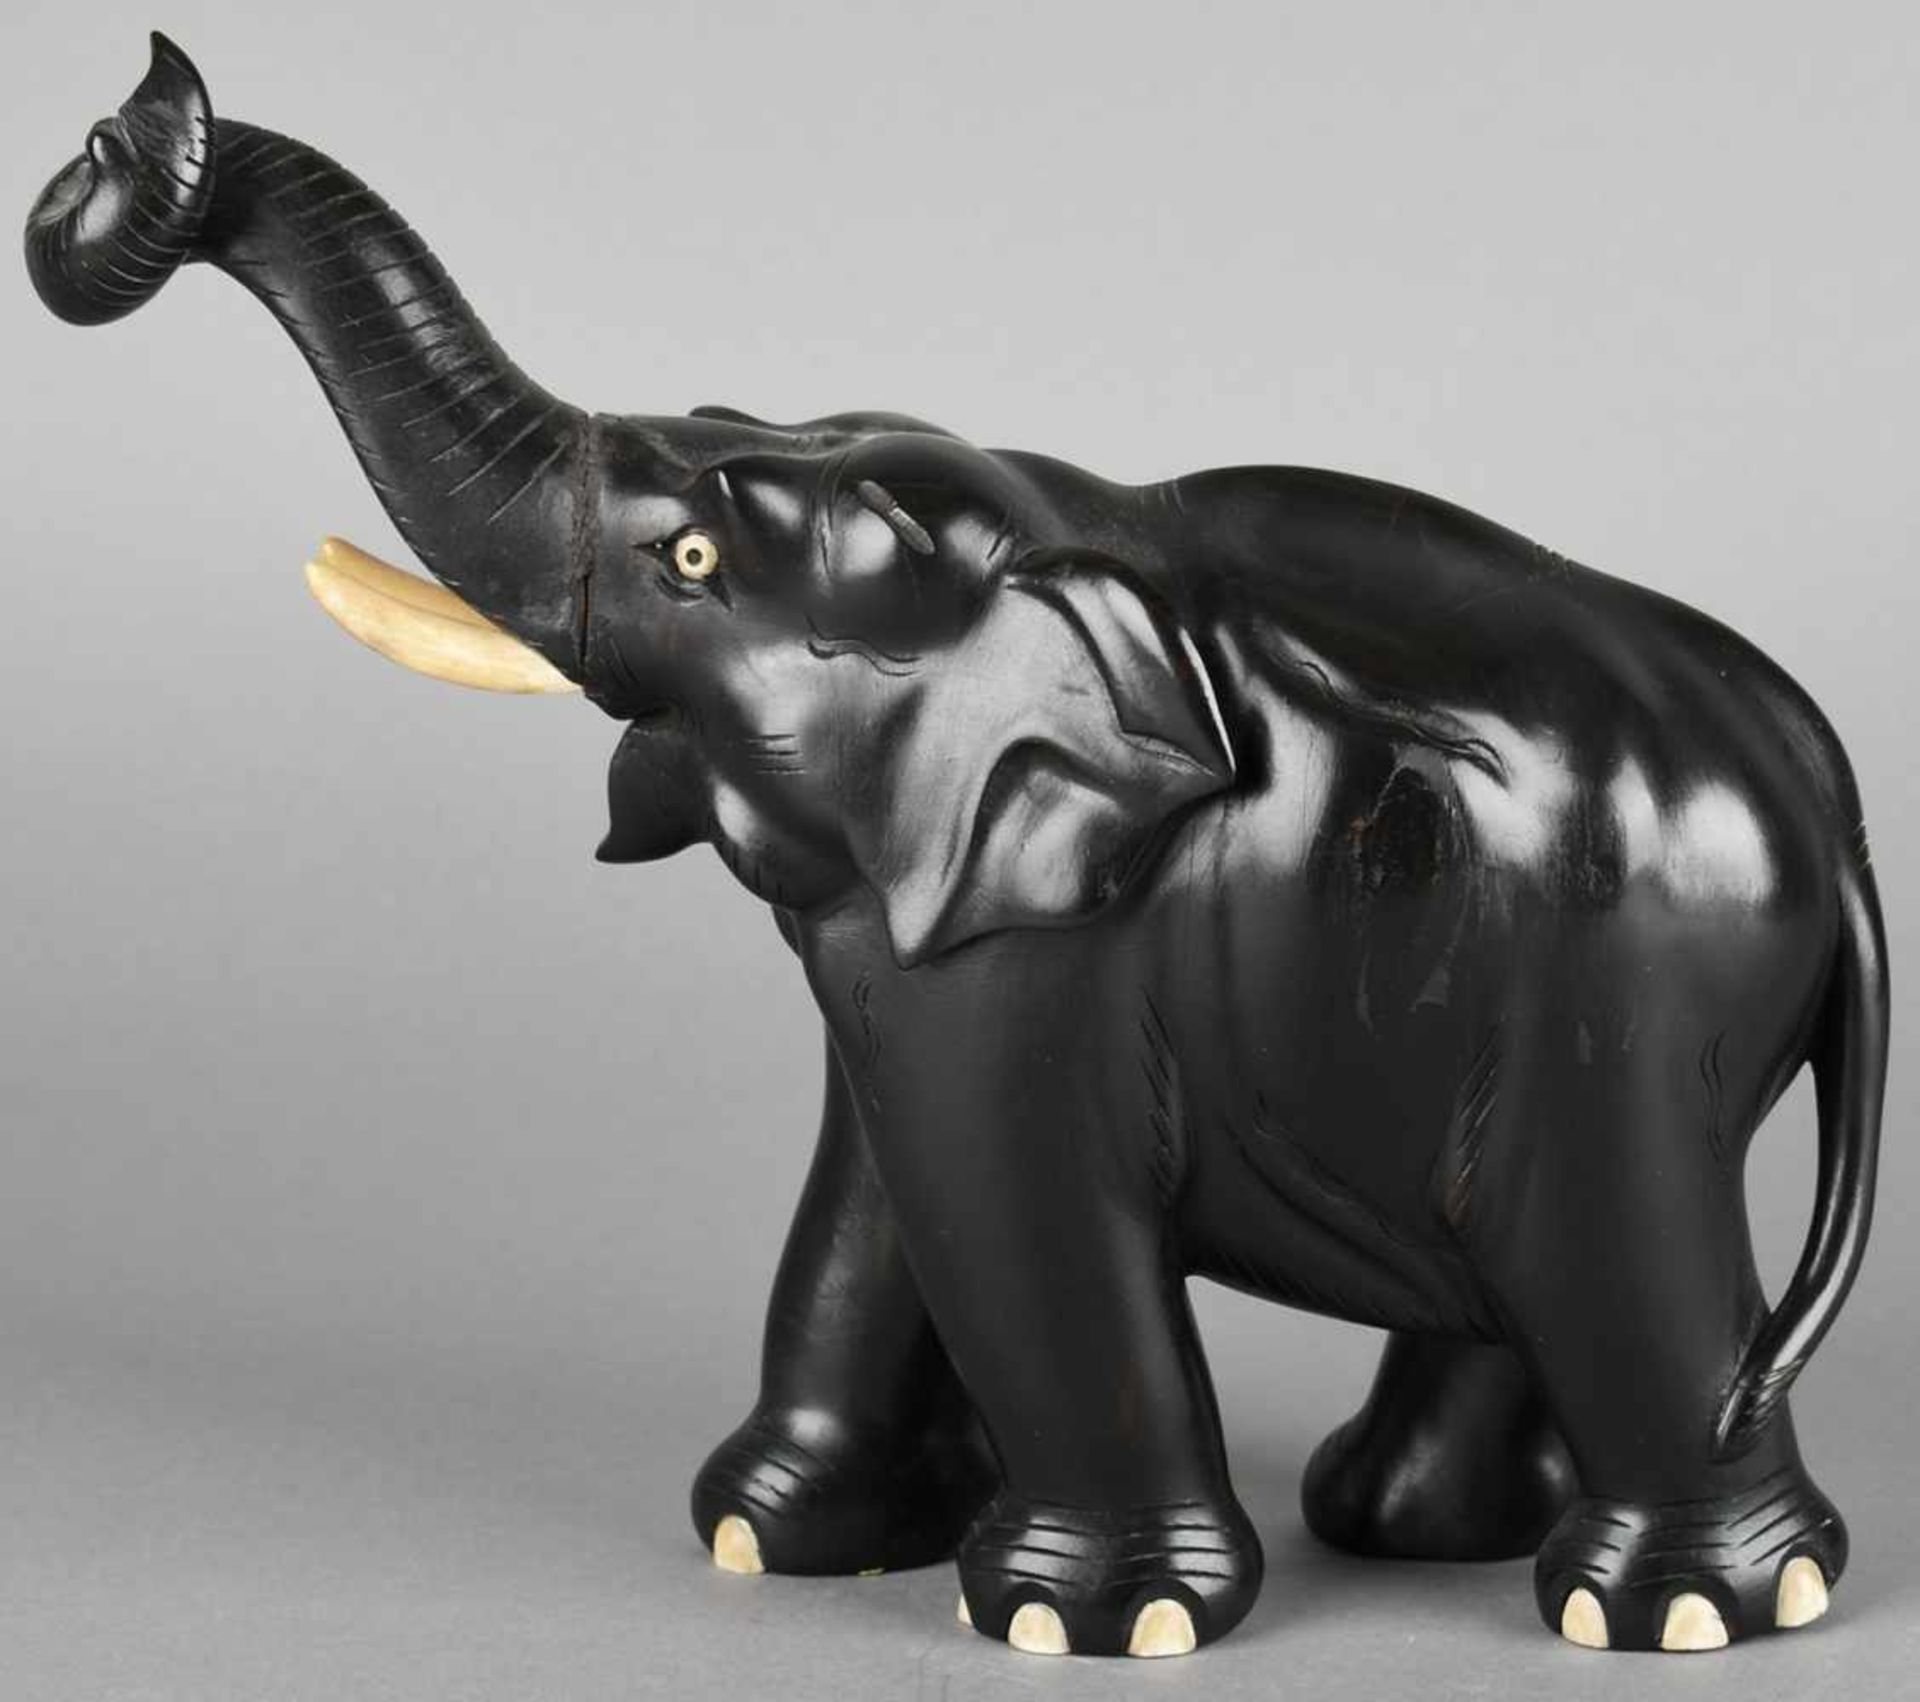 Elefantenfigur Tropenholz, geschnitzt und schwarz bemalt, schreitender Elefant mit erhobenem Rüssel, - Bild 3 aus 3